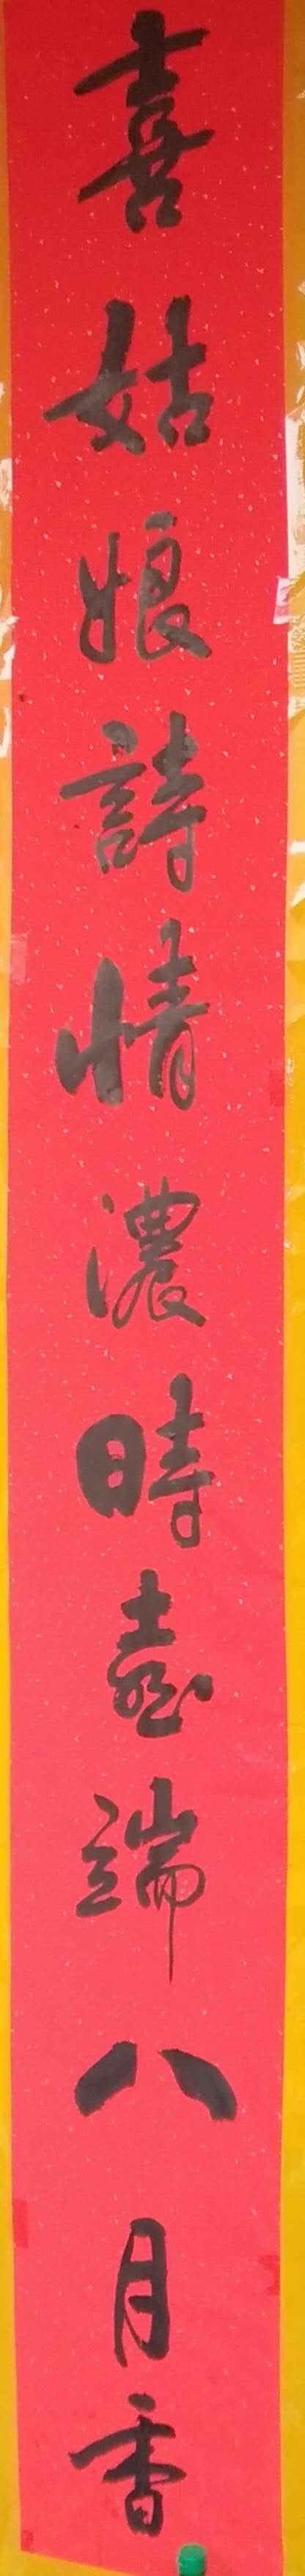 中国楹联学会中宣盛世文化艺术交流中心书画风采展示——吴林宁